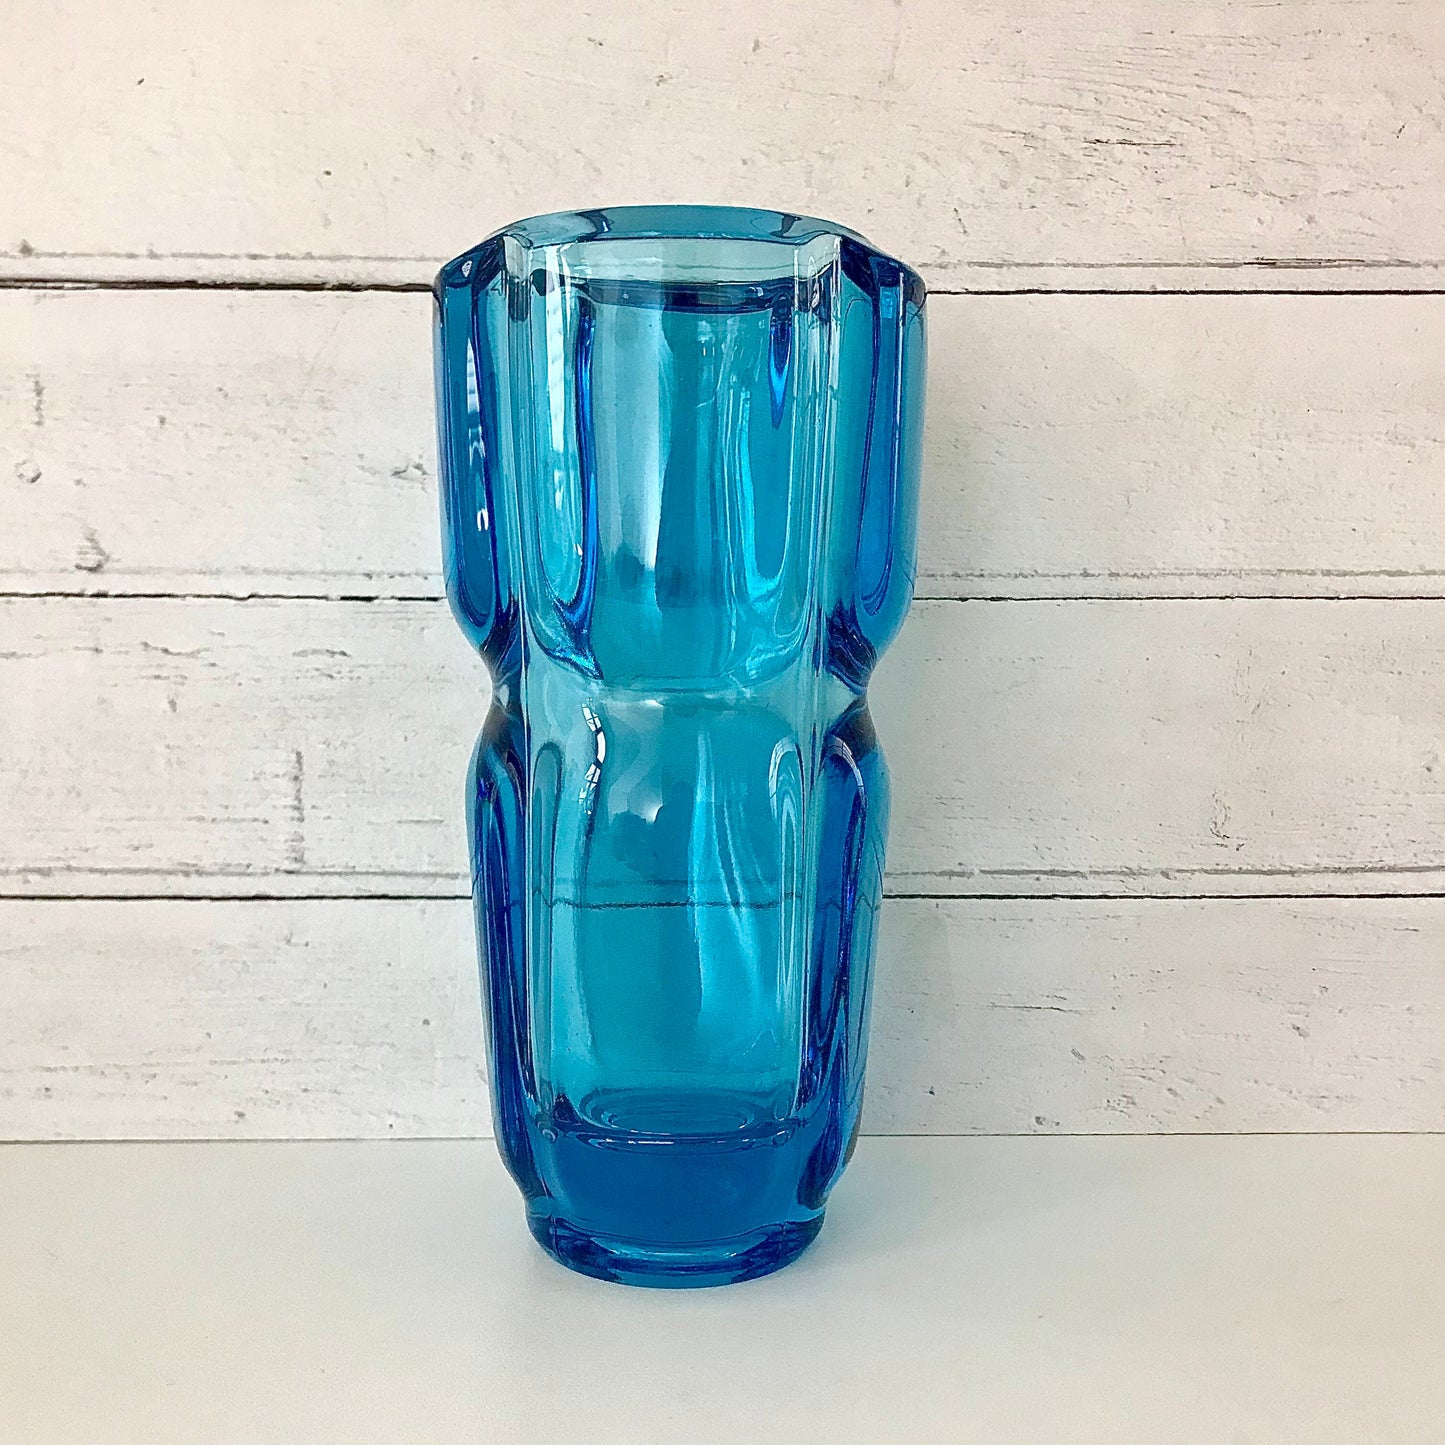 Sklo Union Teal Blue Glass Vase Turquoise Czech Bohemian Rudolfova Frantisek Vizner